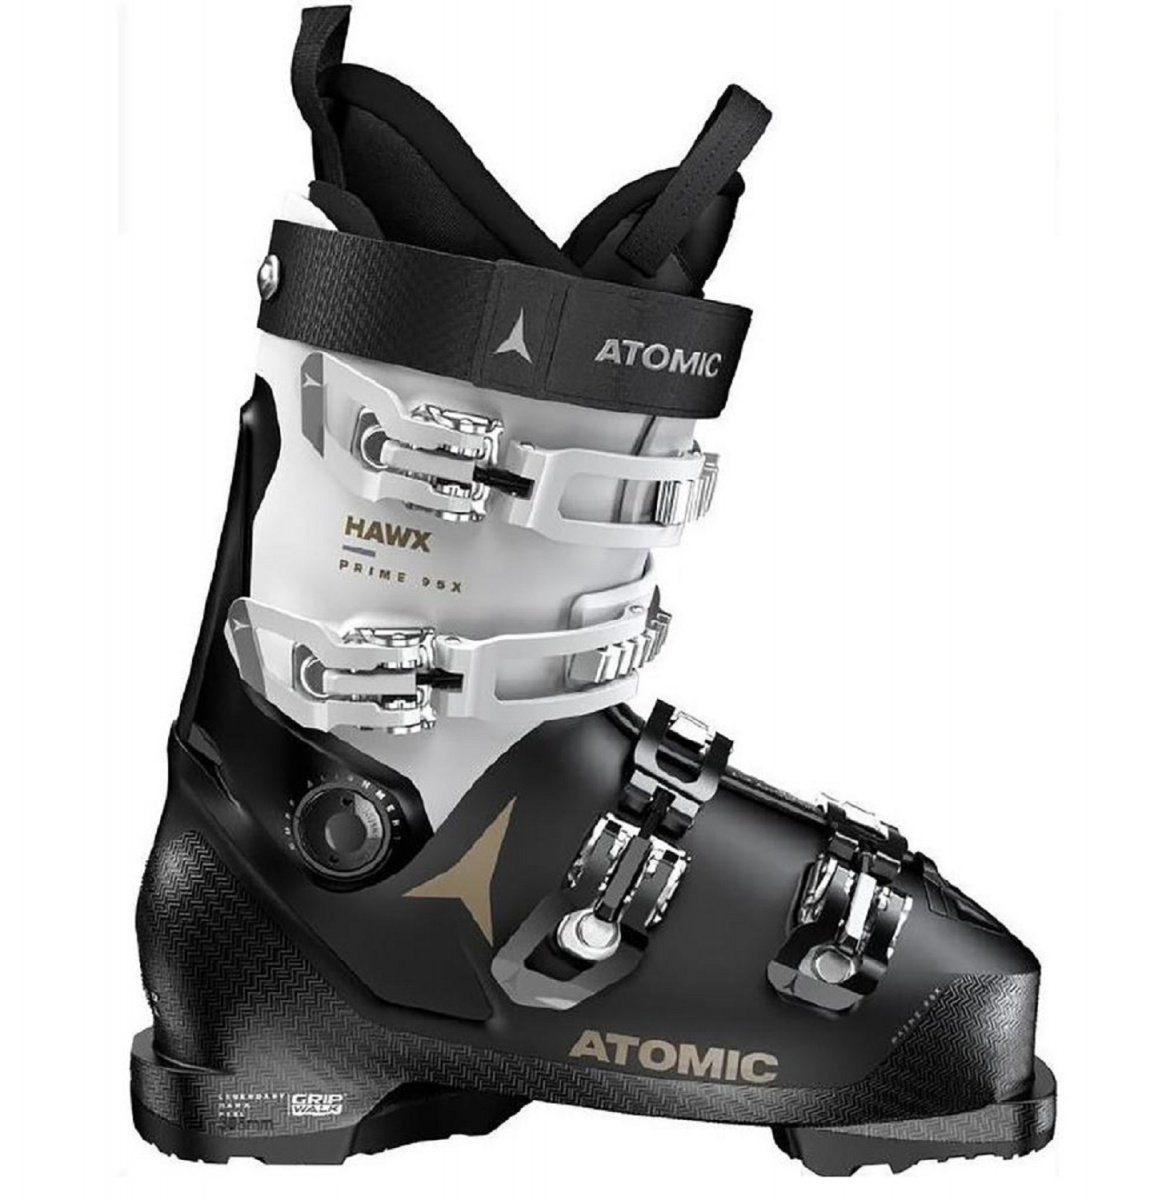 Atomic Atomic Hawx Prime 95X GW Damen Skischuhe Skistiefel AE5027740  Skischuh